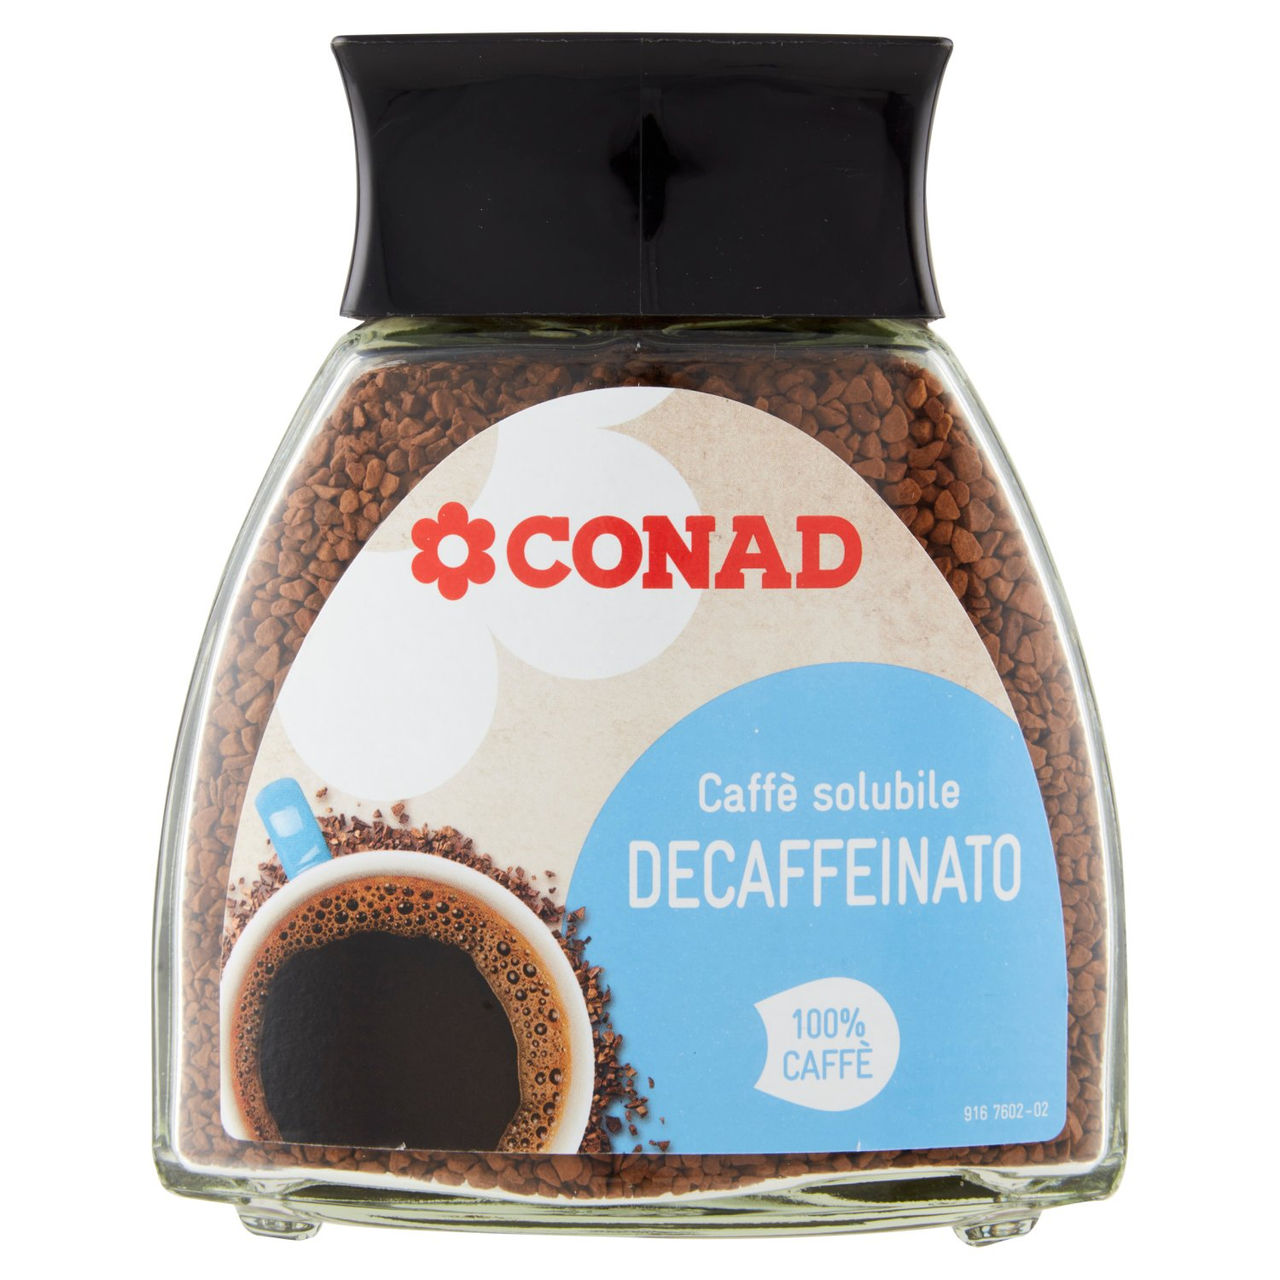 Caffè solubile decaffeinato Conad online